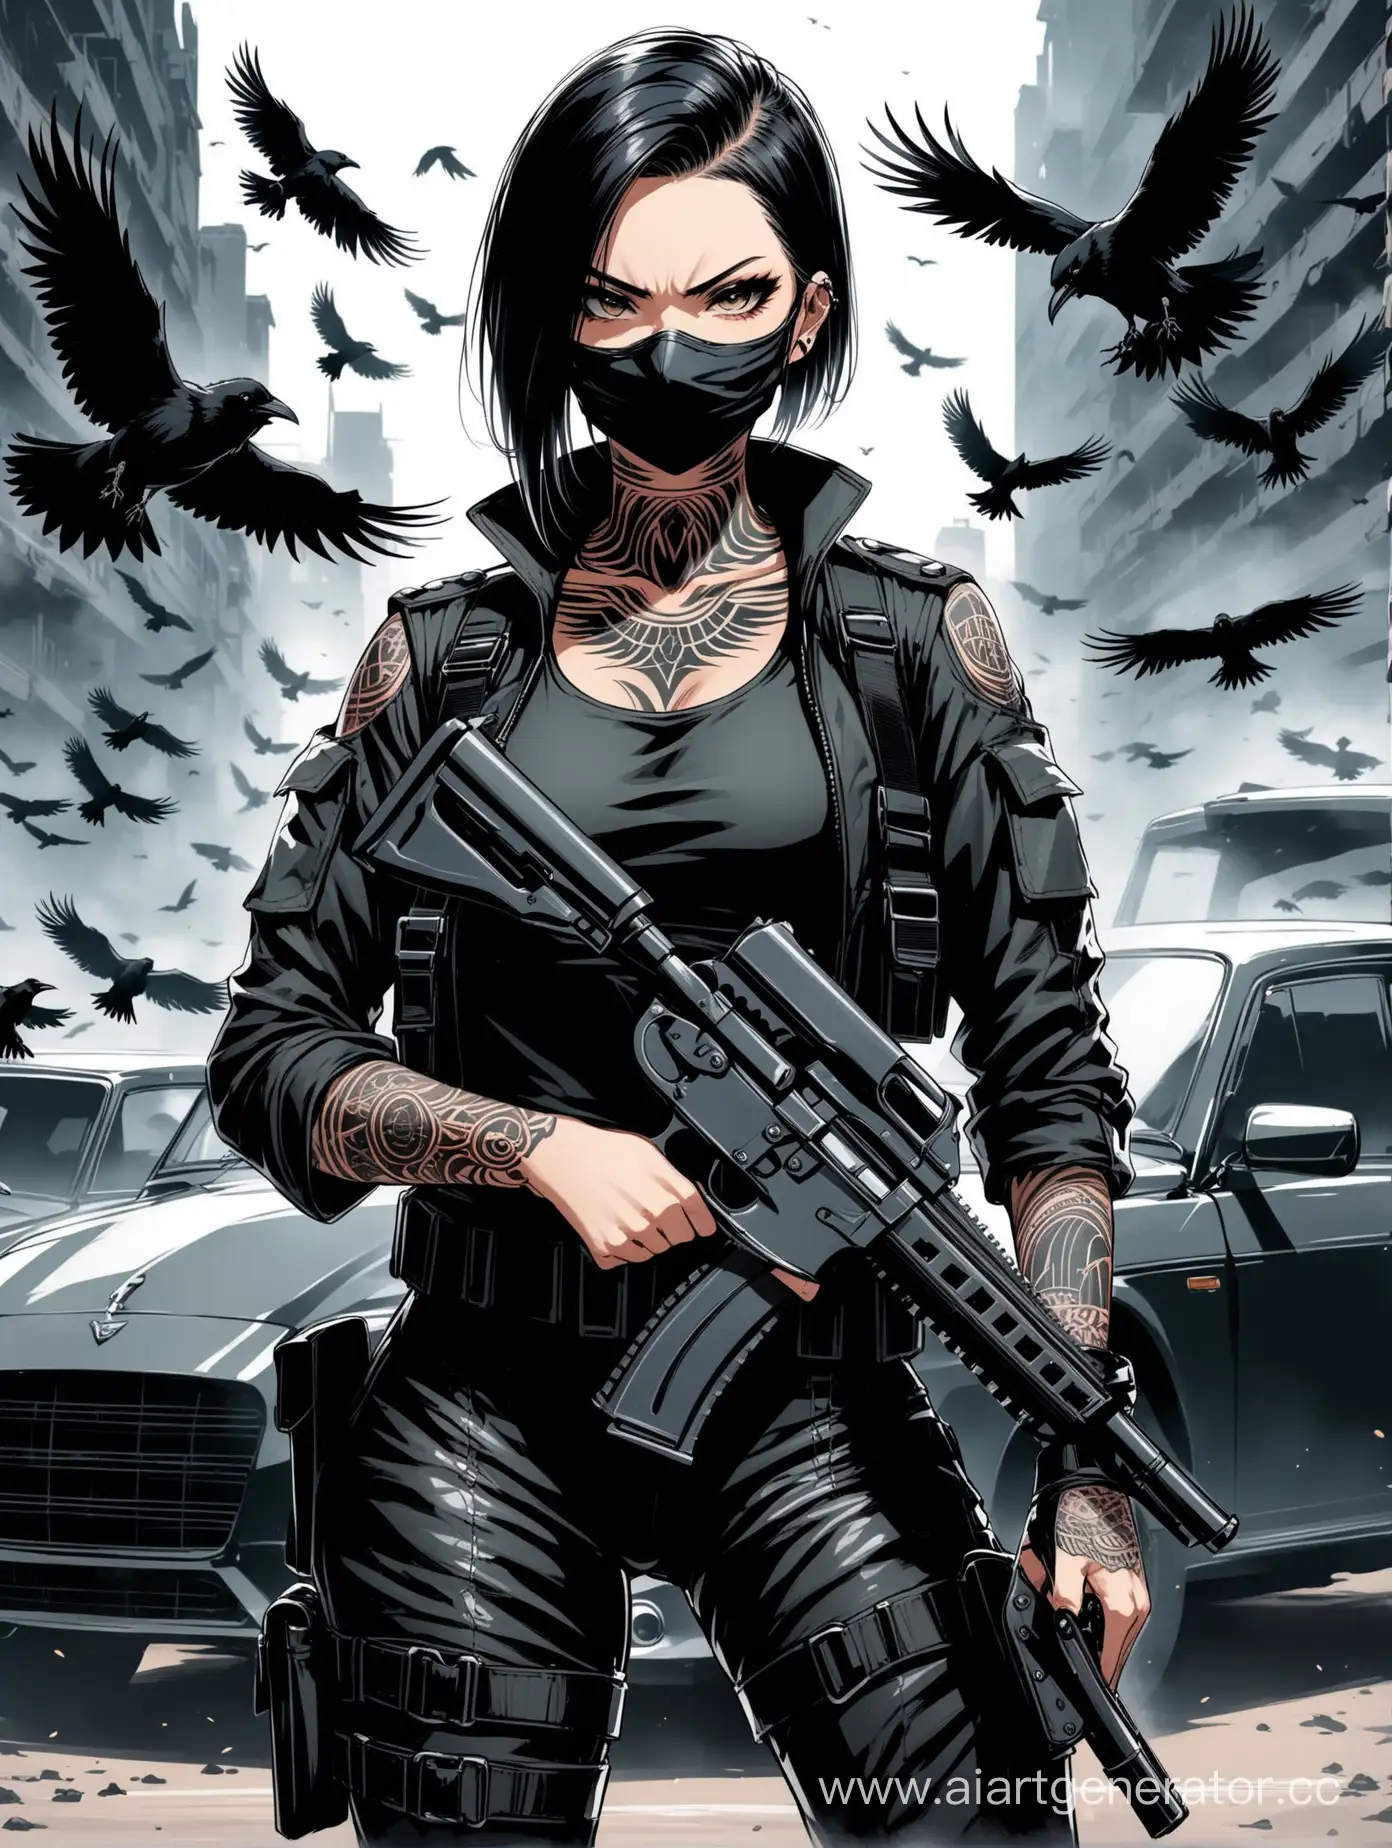 Девушка с выбритыми виском, с черными волосами, в татуировках, с двойной кобурой, одежда черная, стиль военный, с маской на лице, вокруг черные вороны и машина, боевой настрой 
